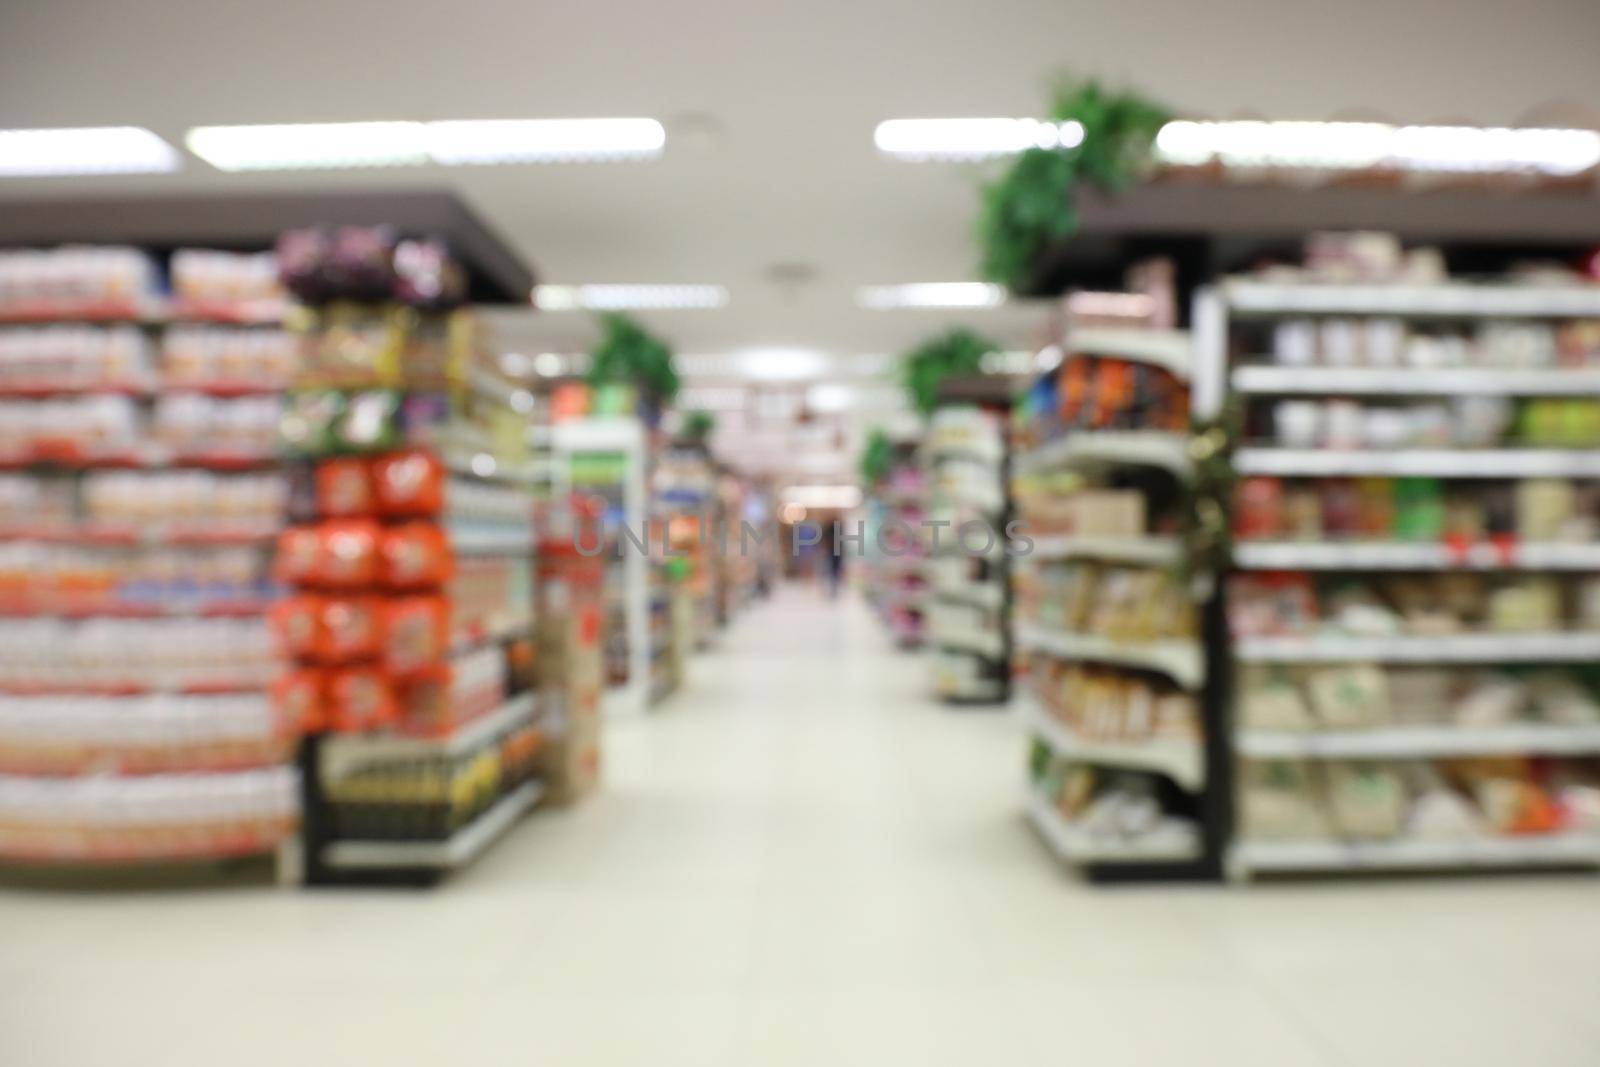 Defocus background blur indoor Store supermarket by piyato